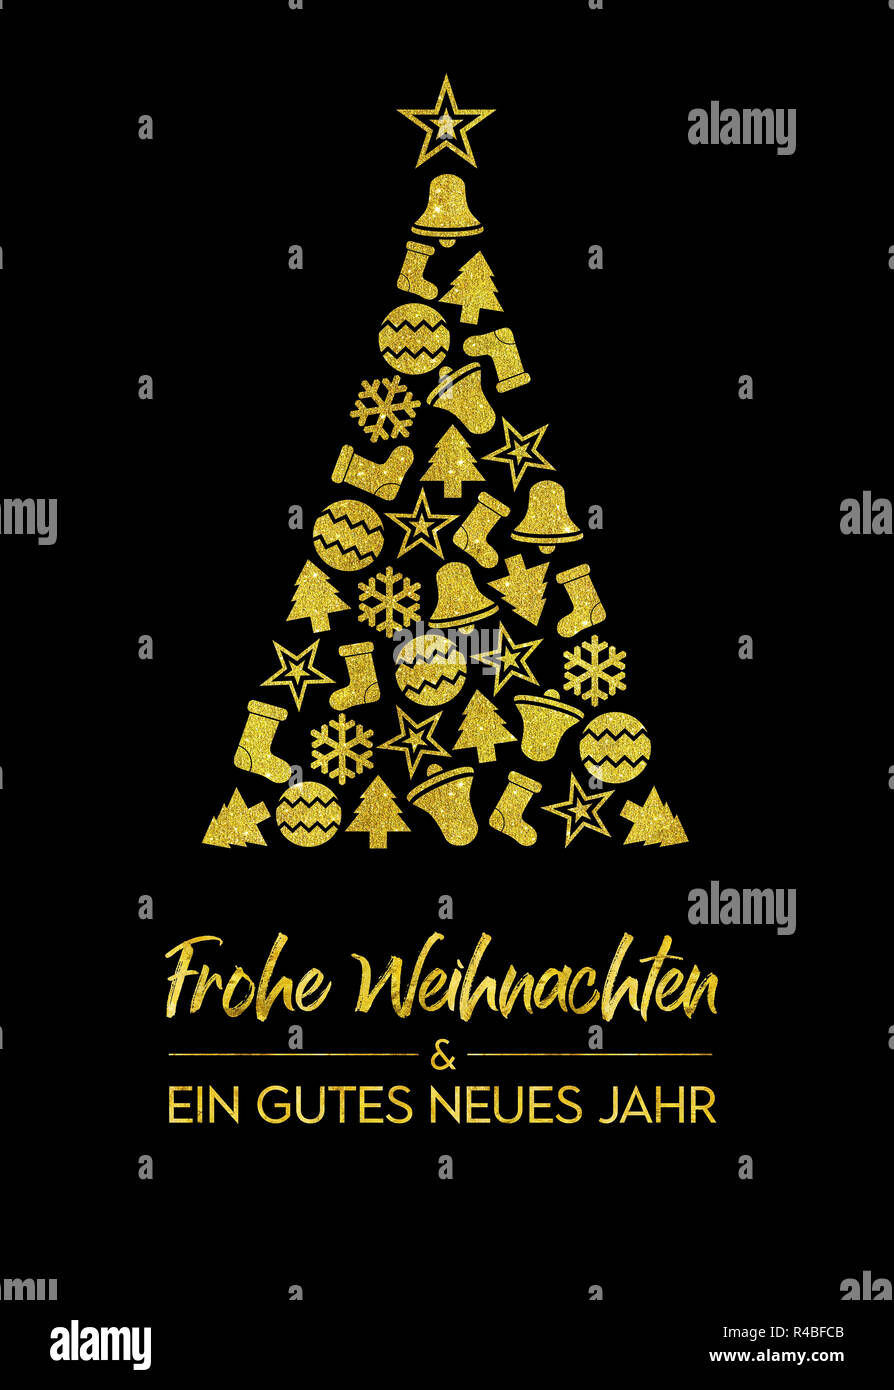 Carte de souhaits - Frohe Weihnachten und ein gutes neues Jahr - Joyeux Noël et bonne année en allemand Banque D'Images